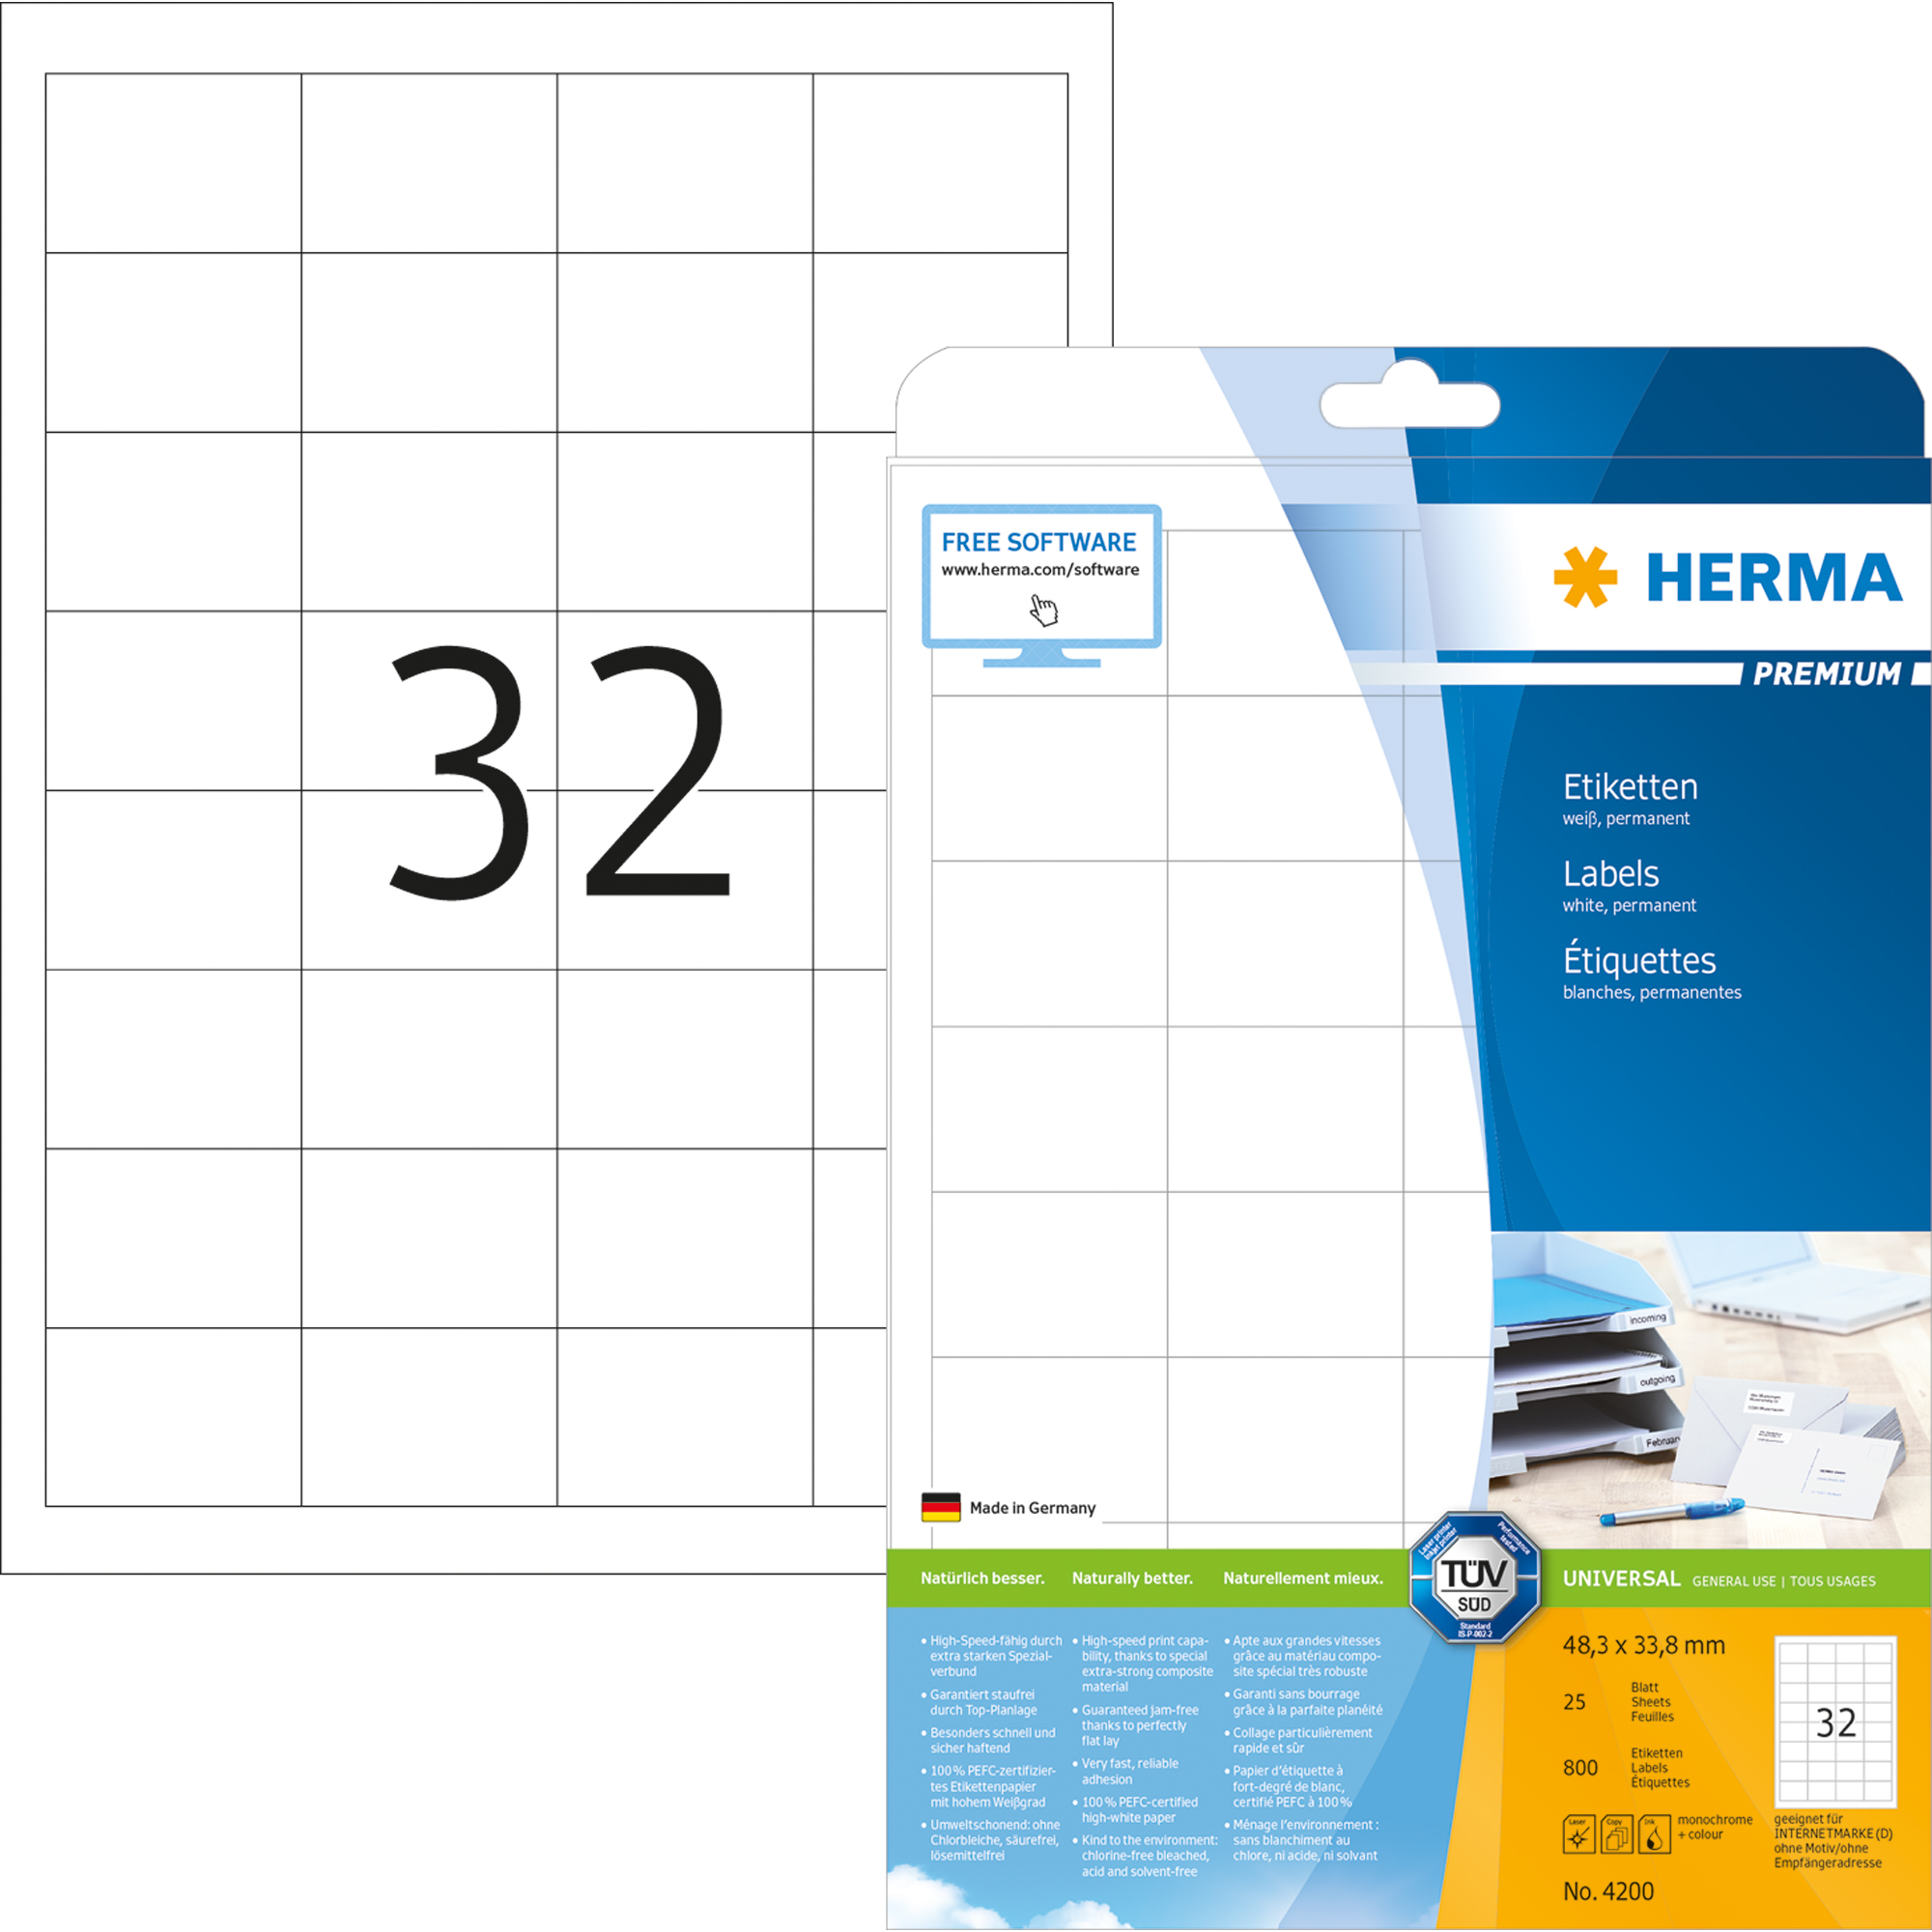 HERMA Universaletikett Premium weiß, 48,3 x 33,8 mm